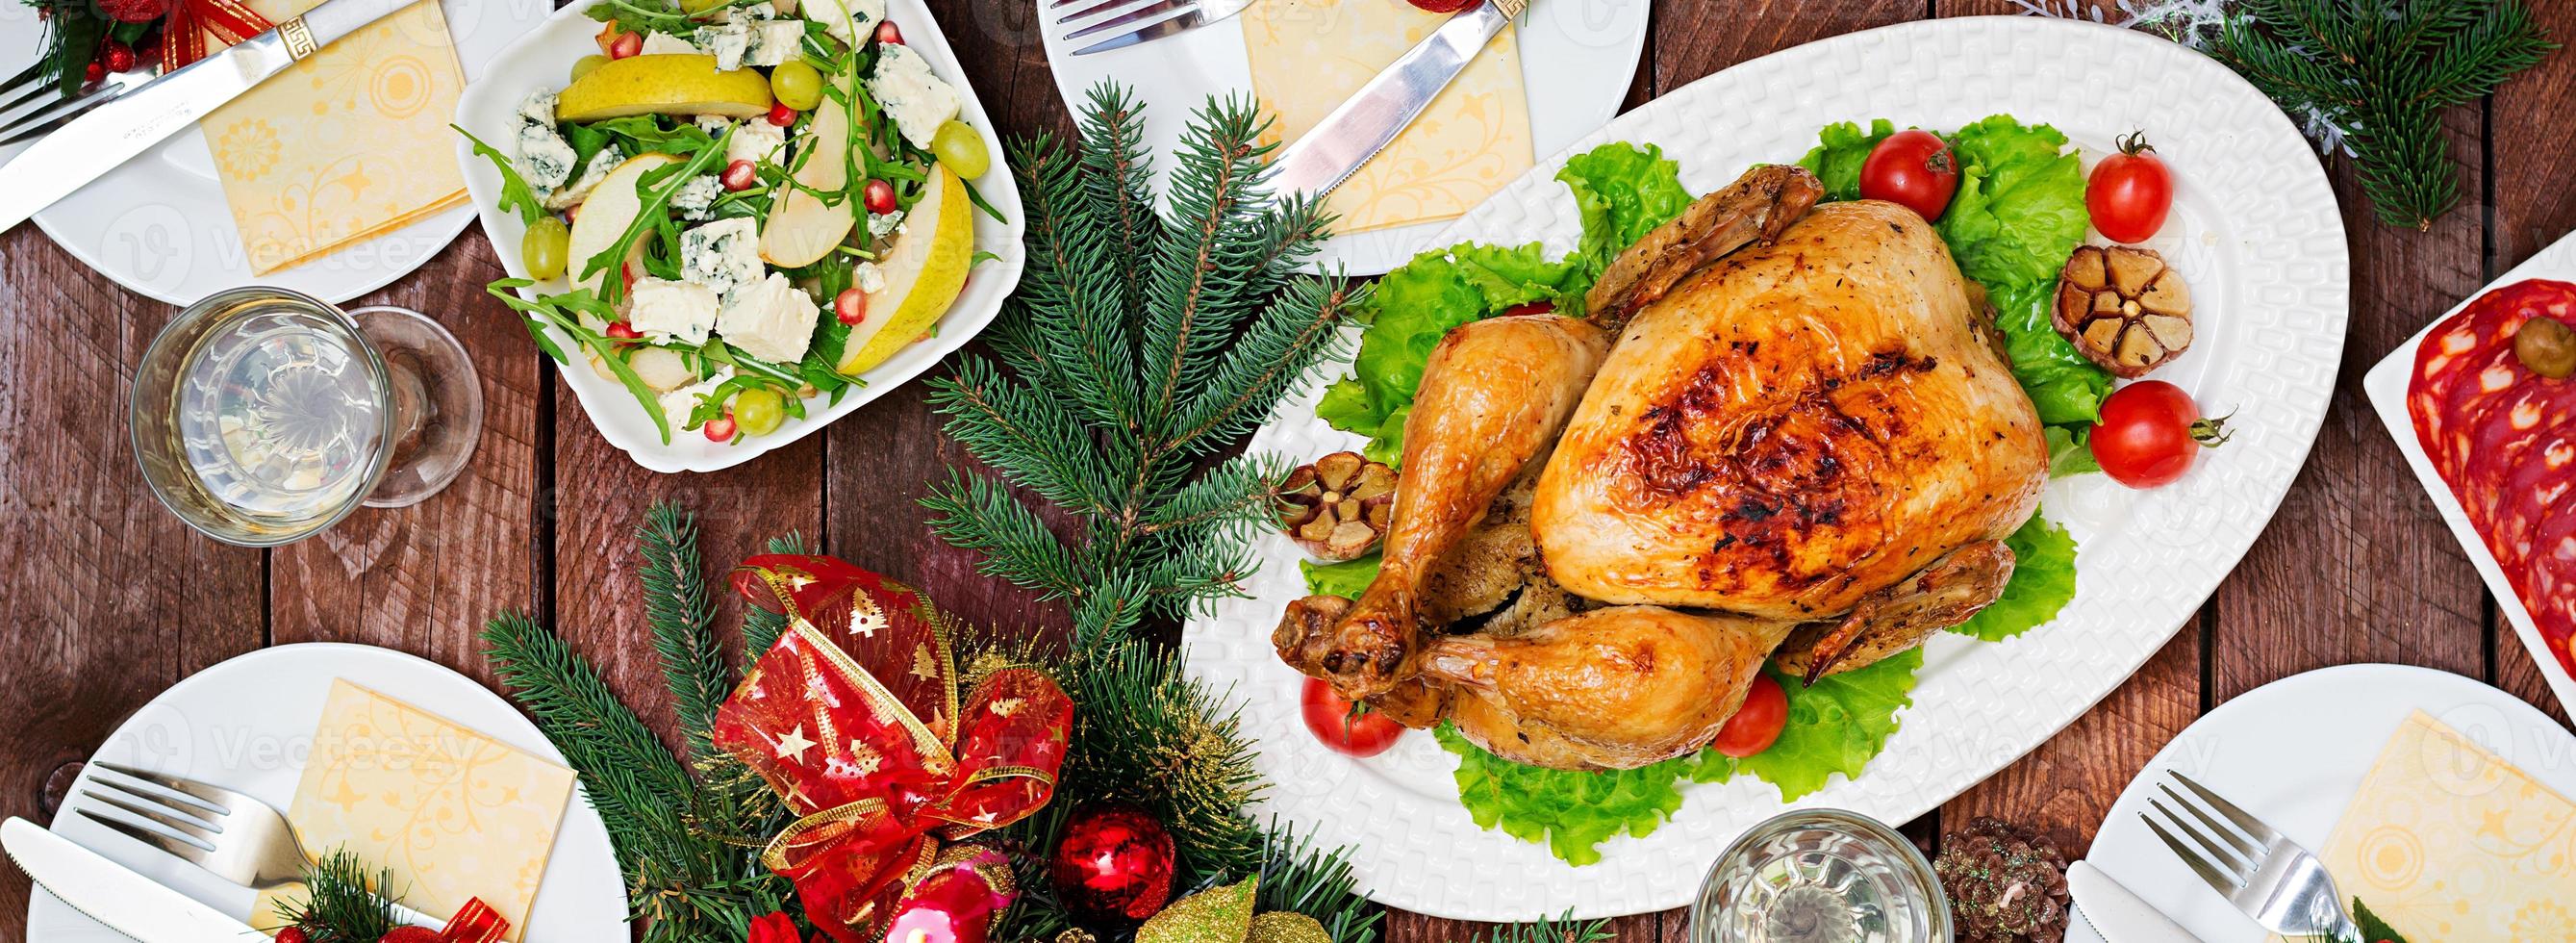 dinde ou poulet au four. la table de noël est servie avec une dinde, décorée de guirlandes lumineuses et de bougies. poulet frit, table. dîner de Noël. mise à plat. vue de dessus. bannière photo